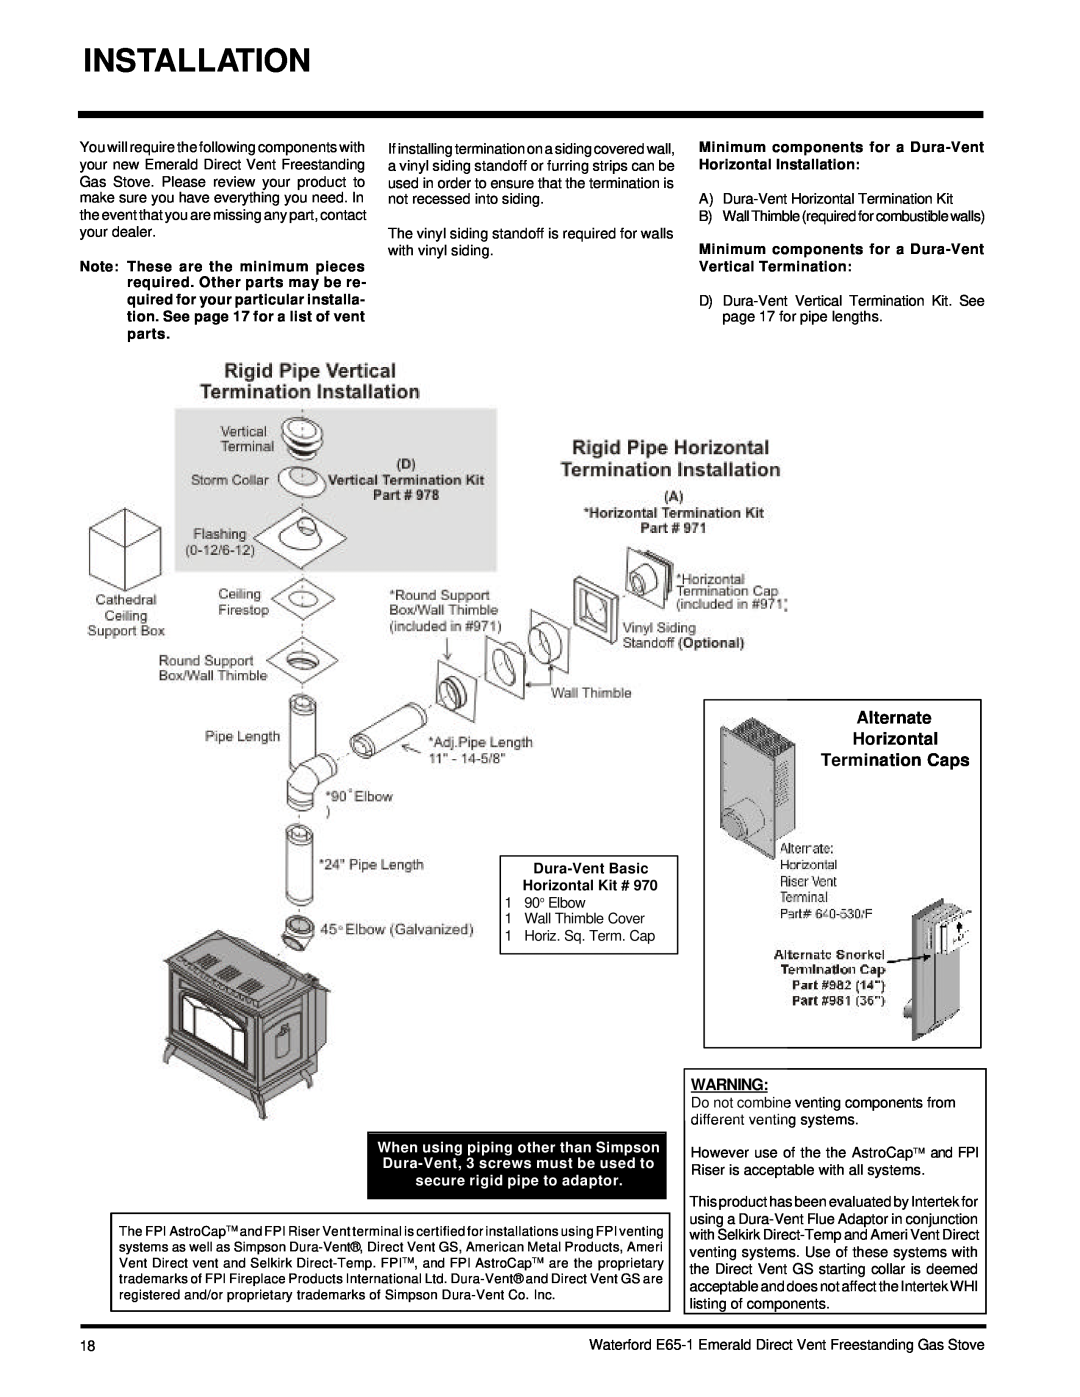 Waterford Appliances E65-NG1, E65-LP1 Alternate Horizontal Termination Caps, Dura-VentBasic Horizontal Kit # 